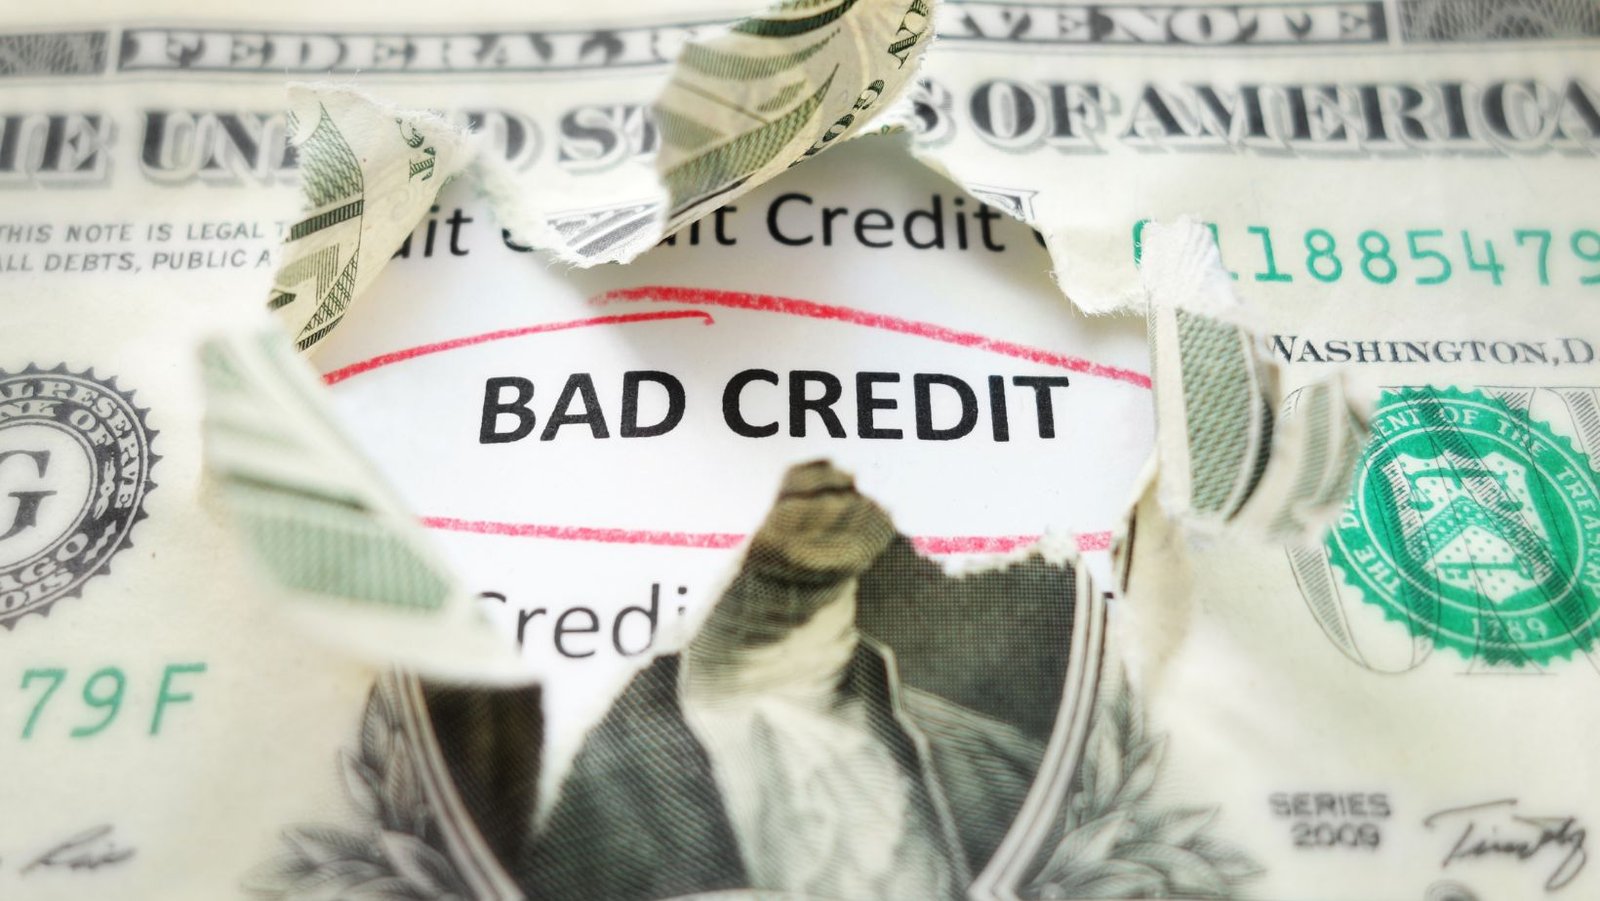 Rising Above Debt: Professional Credit Repair Solutions in Alberta